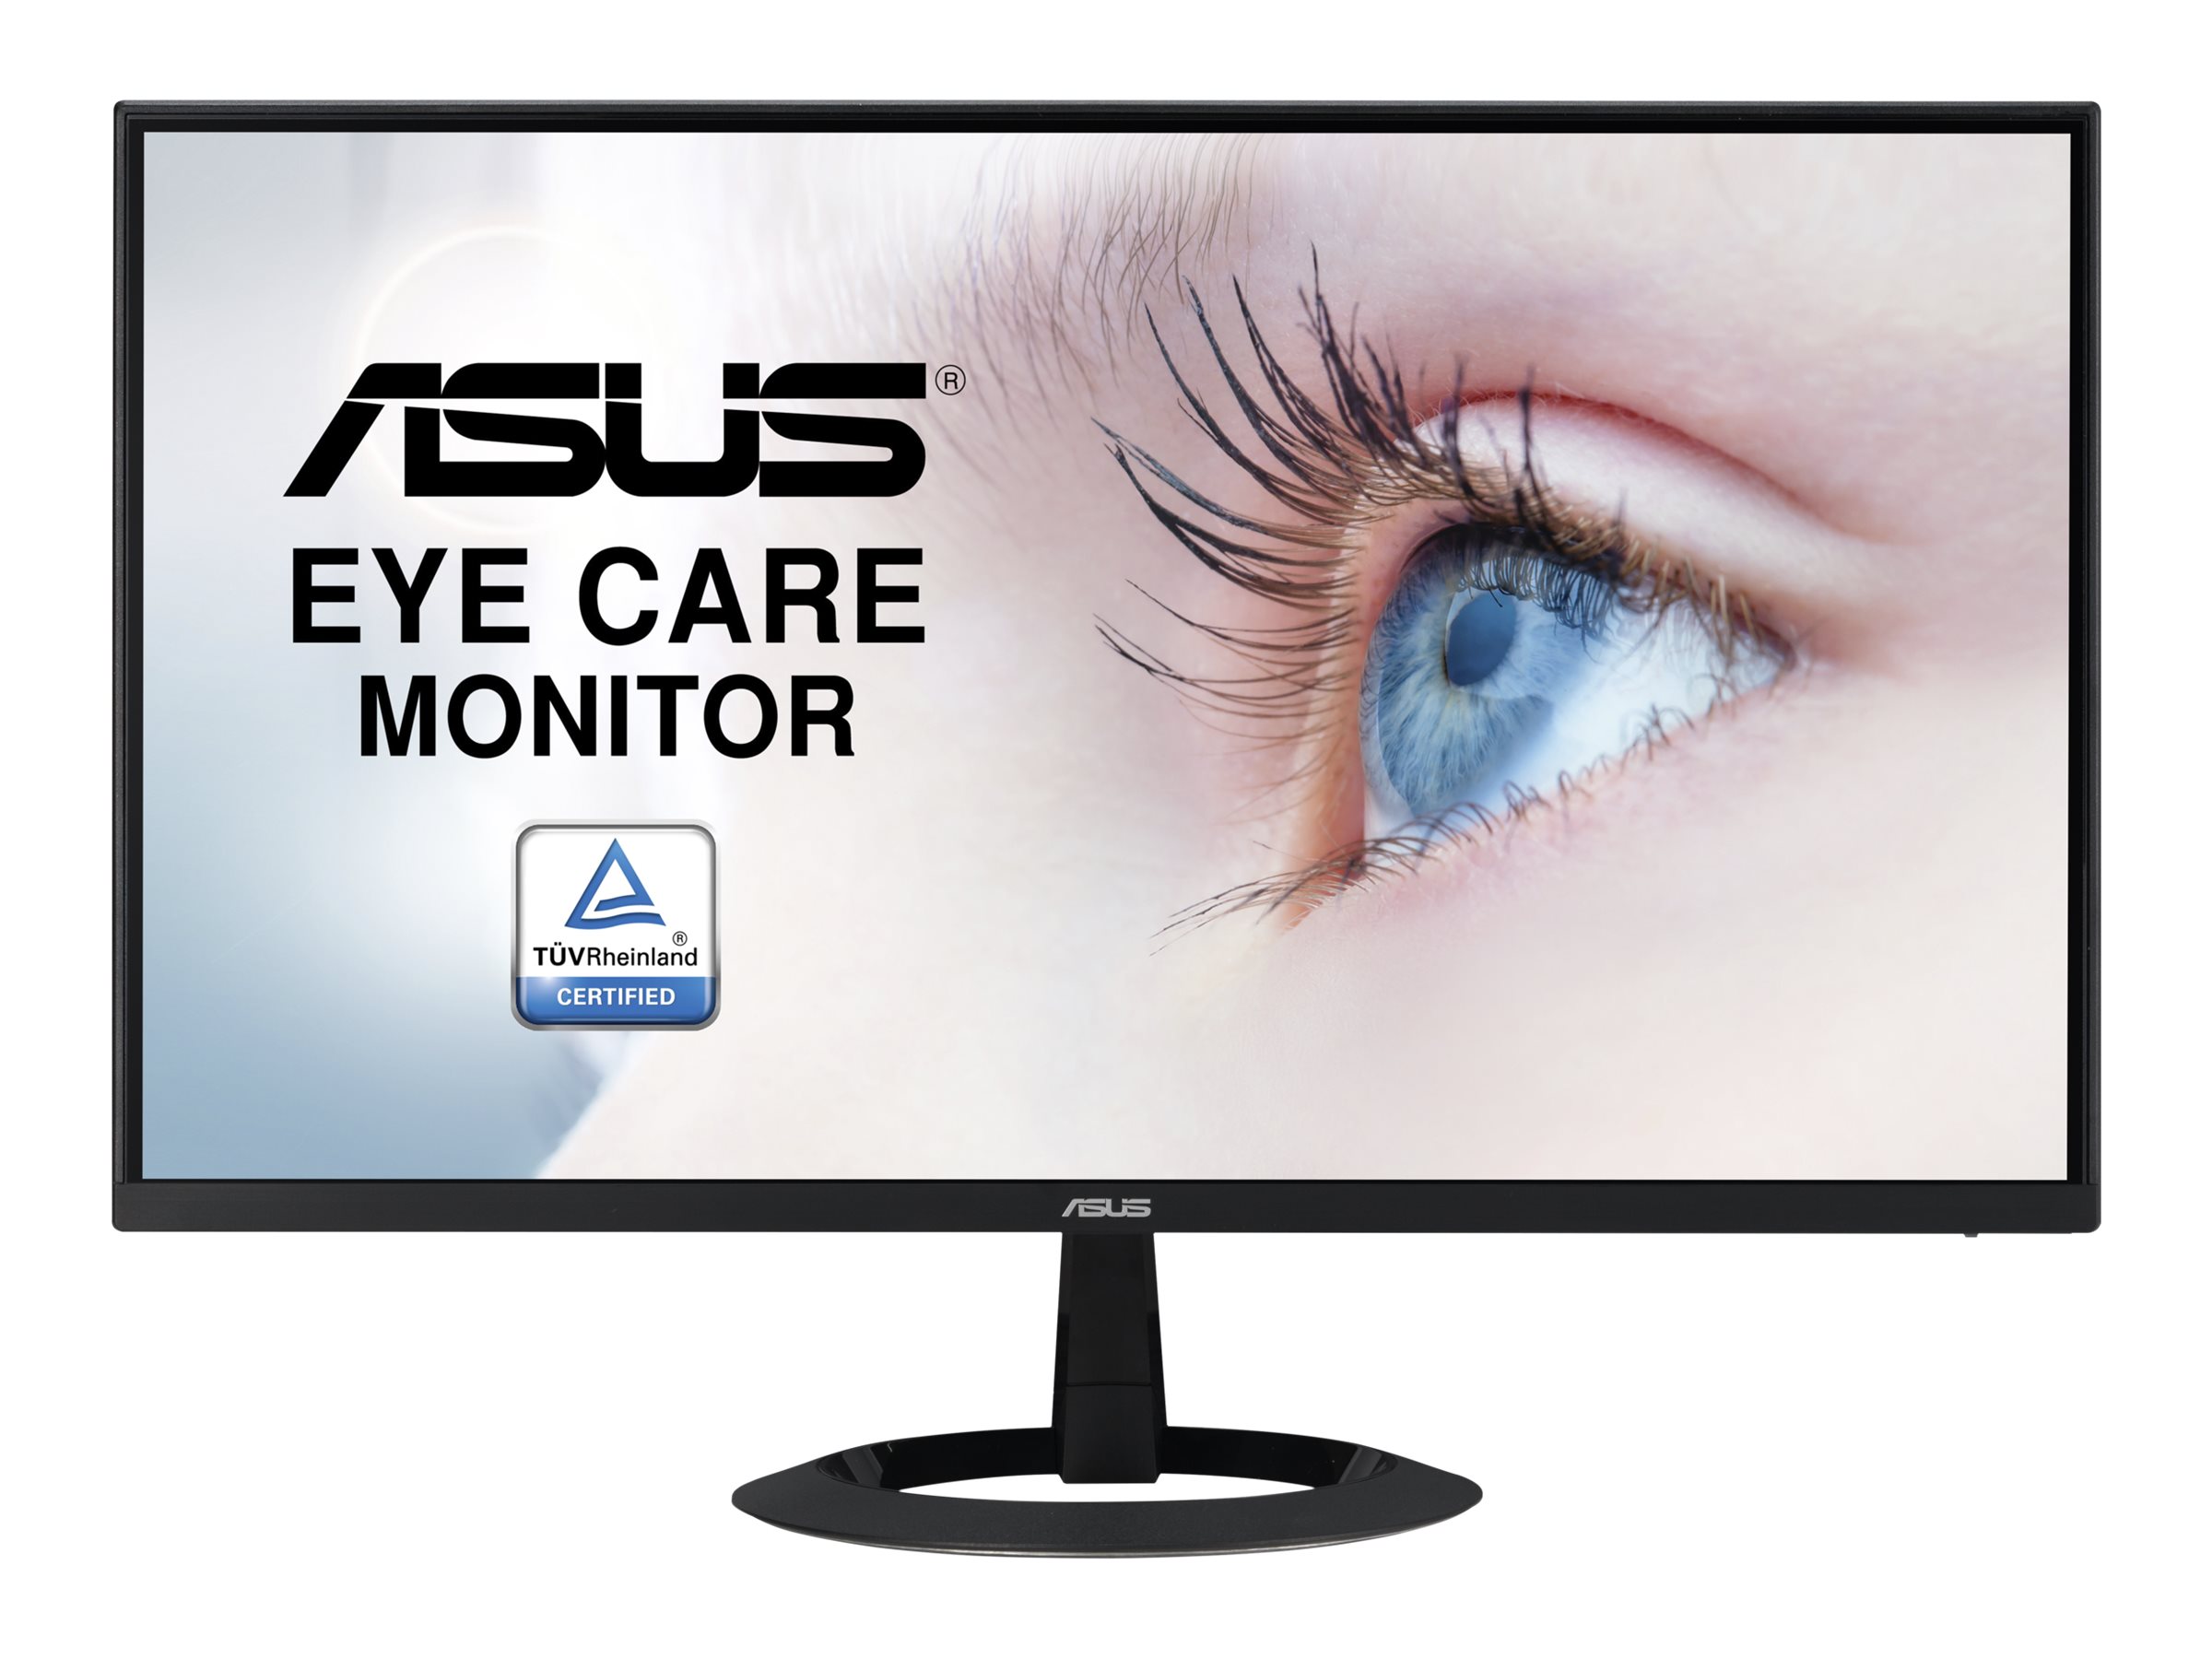 Asus Eye Care VZ22EHE 54.48cm (16:9) FHD HDMI